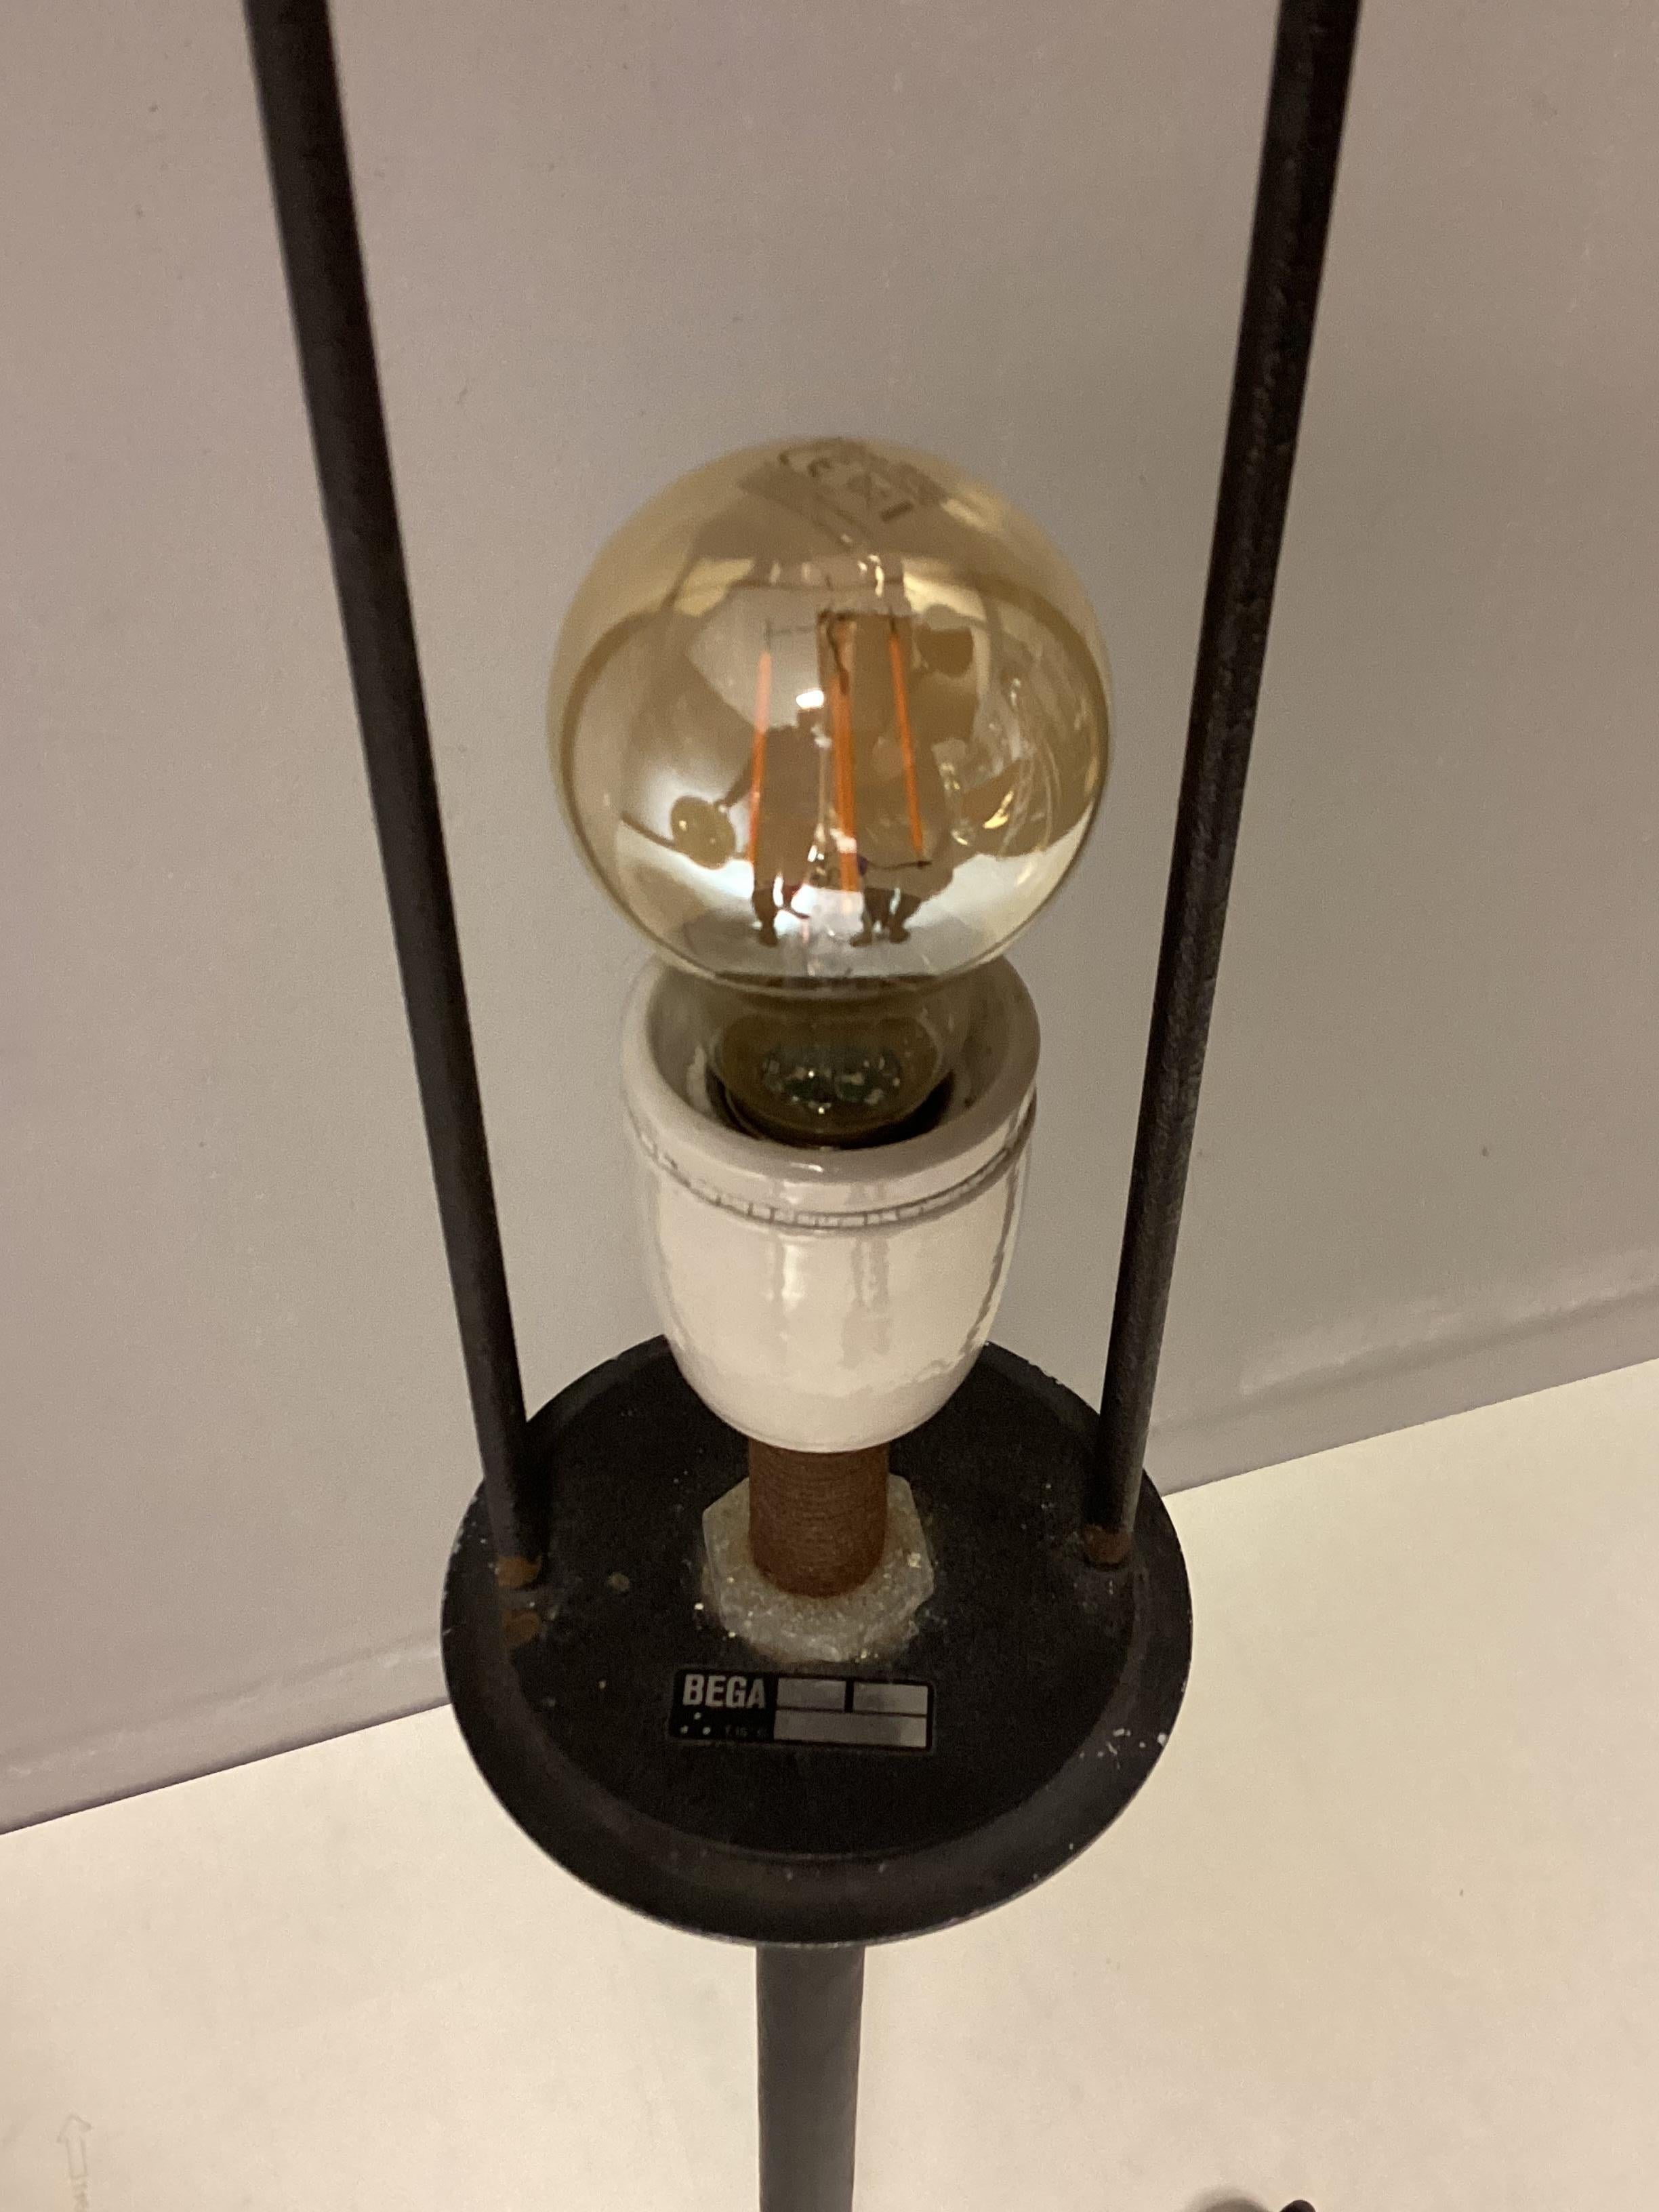 Cette lampe est un rare lampadaire tripode du milieu du siècle par le célèbre fabricant Bega des années 50. Le design pur et spécial ressemble à une pleine lune, surtout lorsque la lampe est allumée. Vous allez adorer l'ambiance.